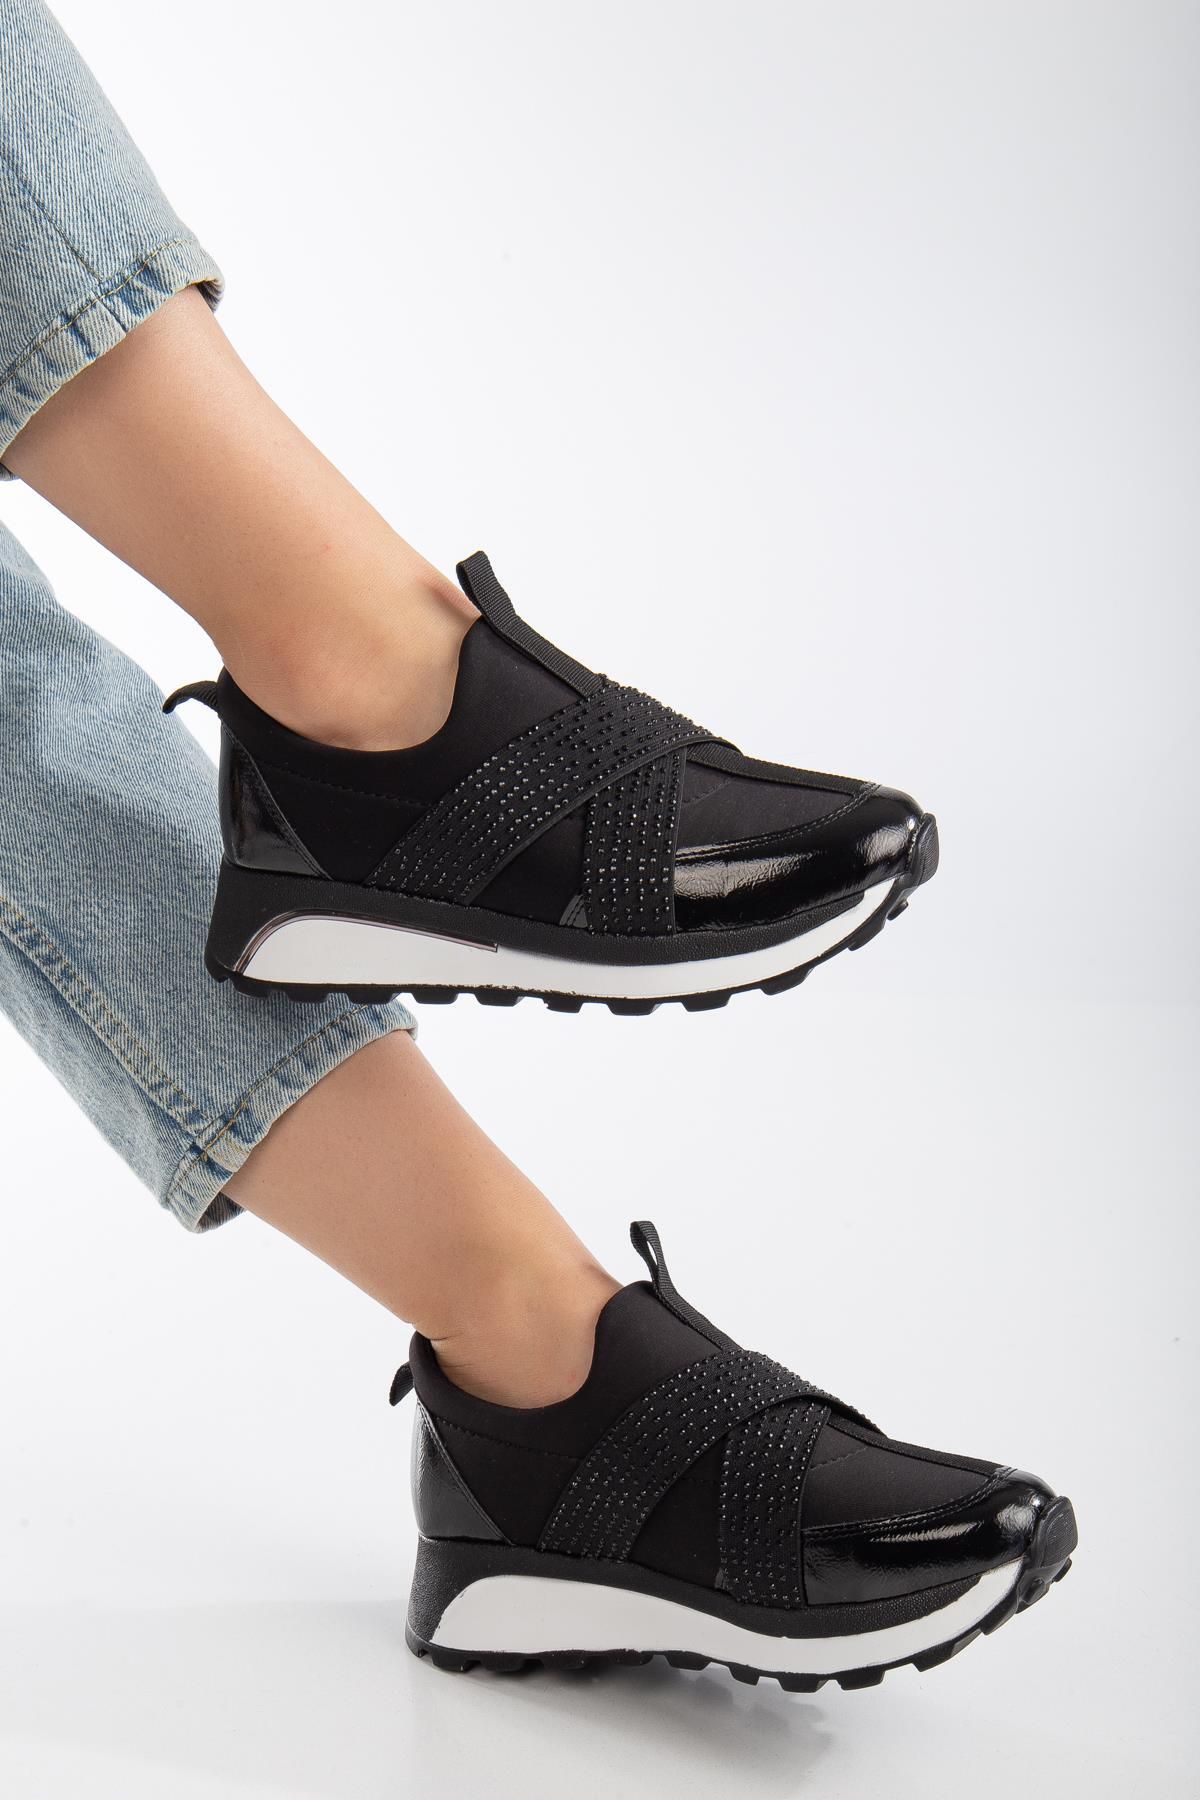 SUİNS SHOES Verica Kadın Spor Ayakkabı Sneaker Lastik Detaylı Taşlı